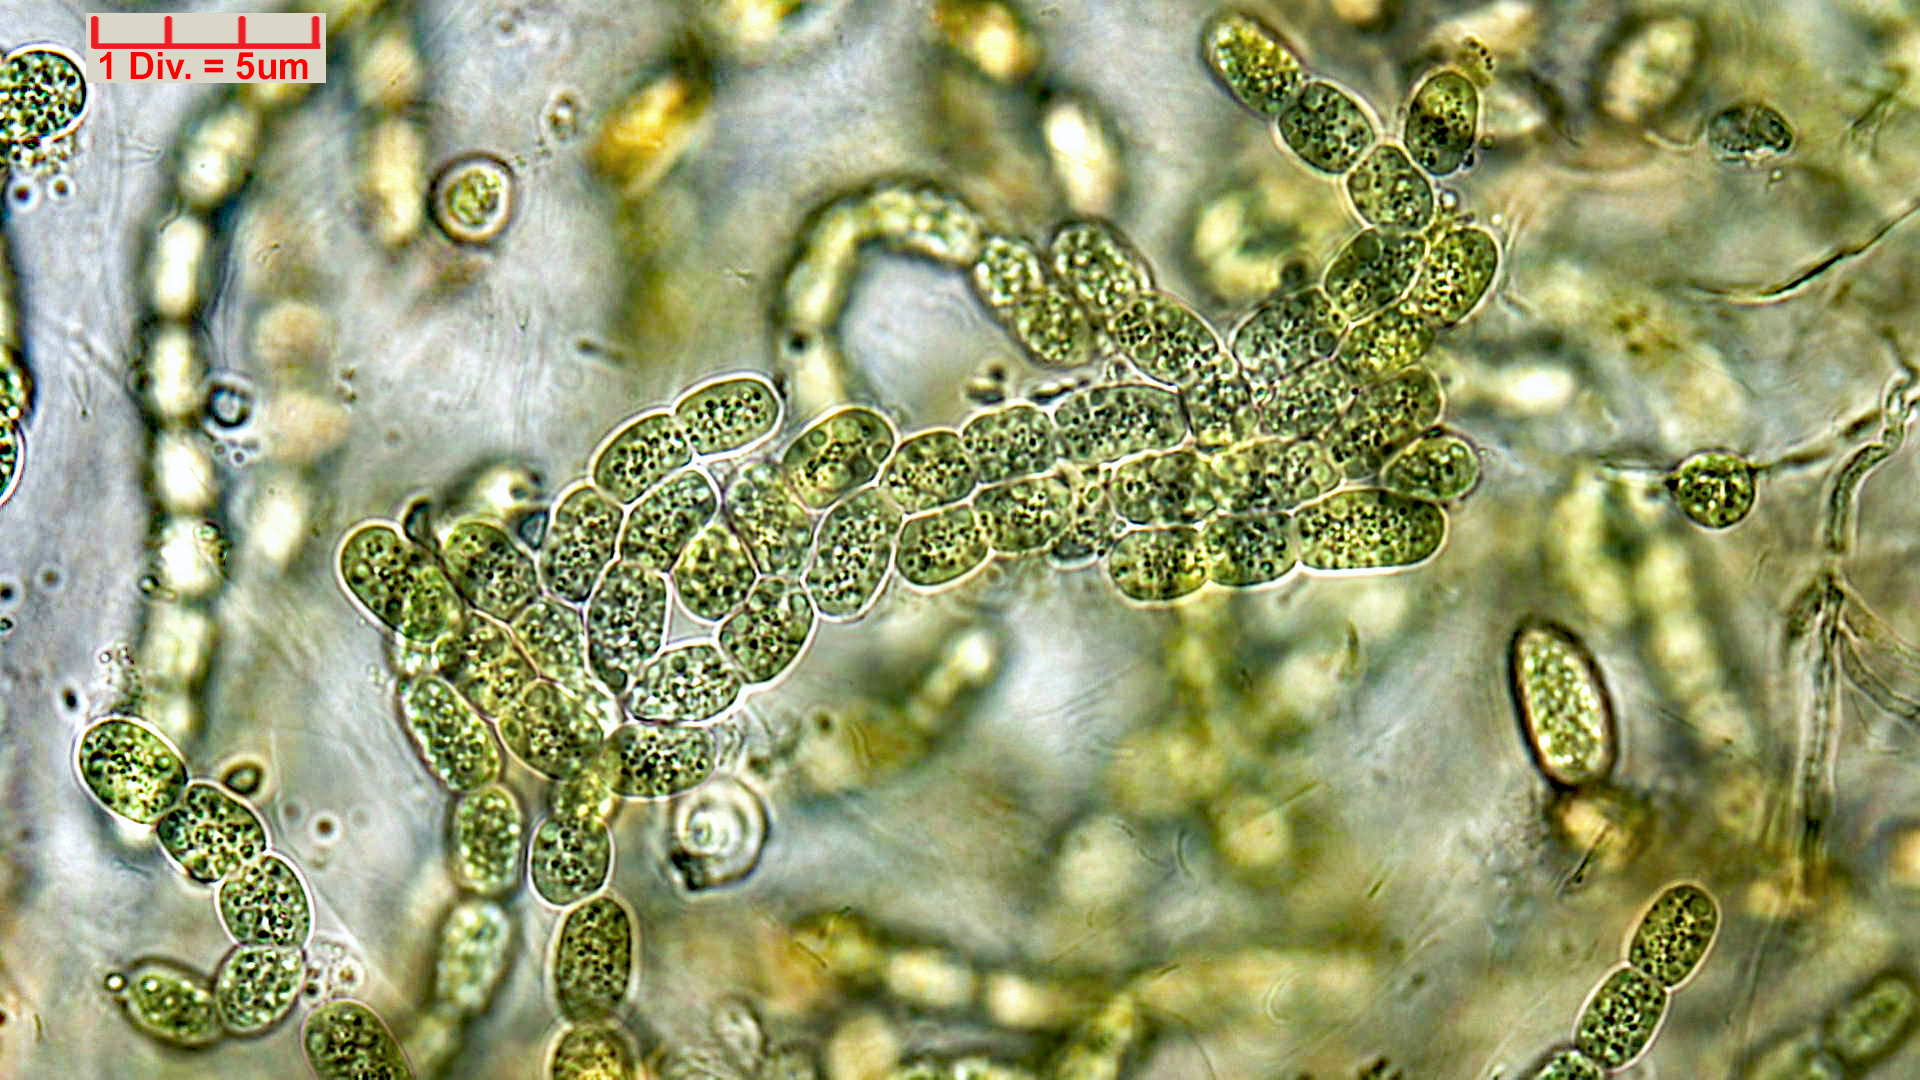 ././Cyanobacteria/Nostocales/Nostocaceae/Desmonostoc/muscorum/desmonostoc-muscorum-592.jpg